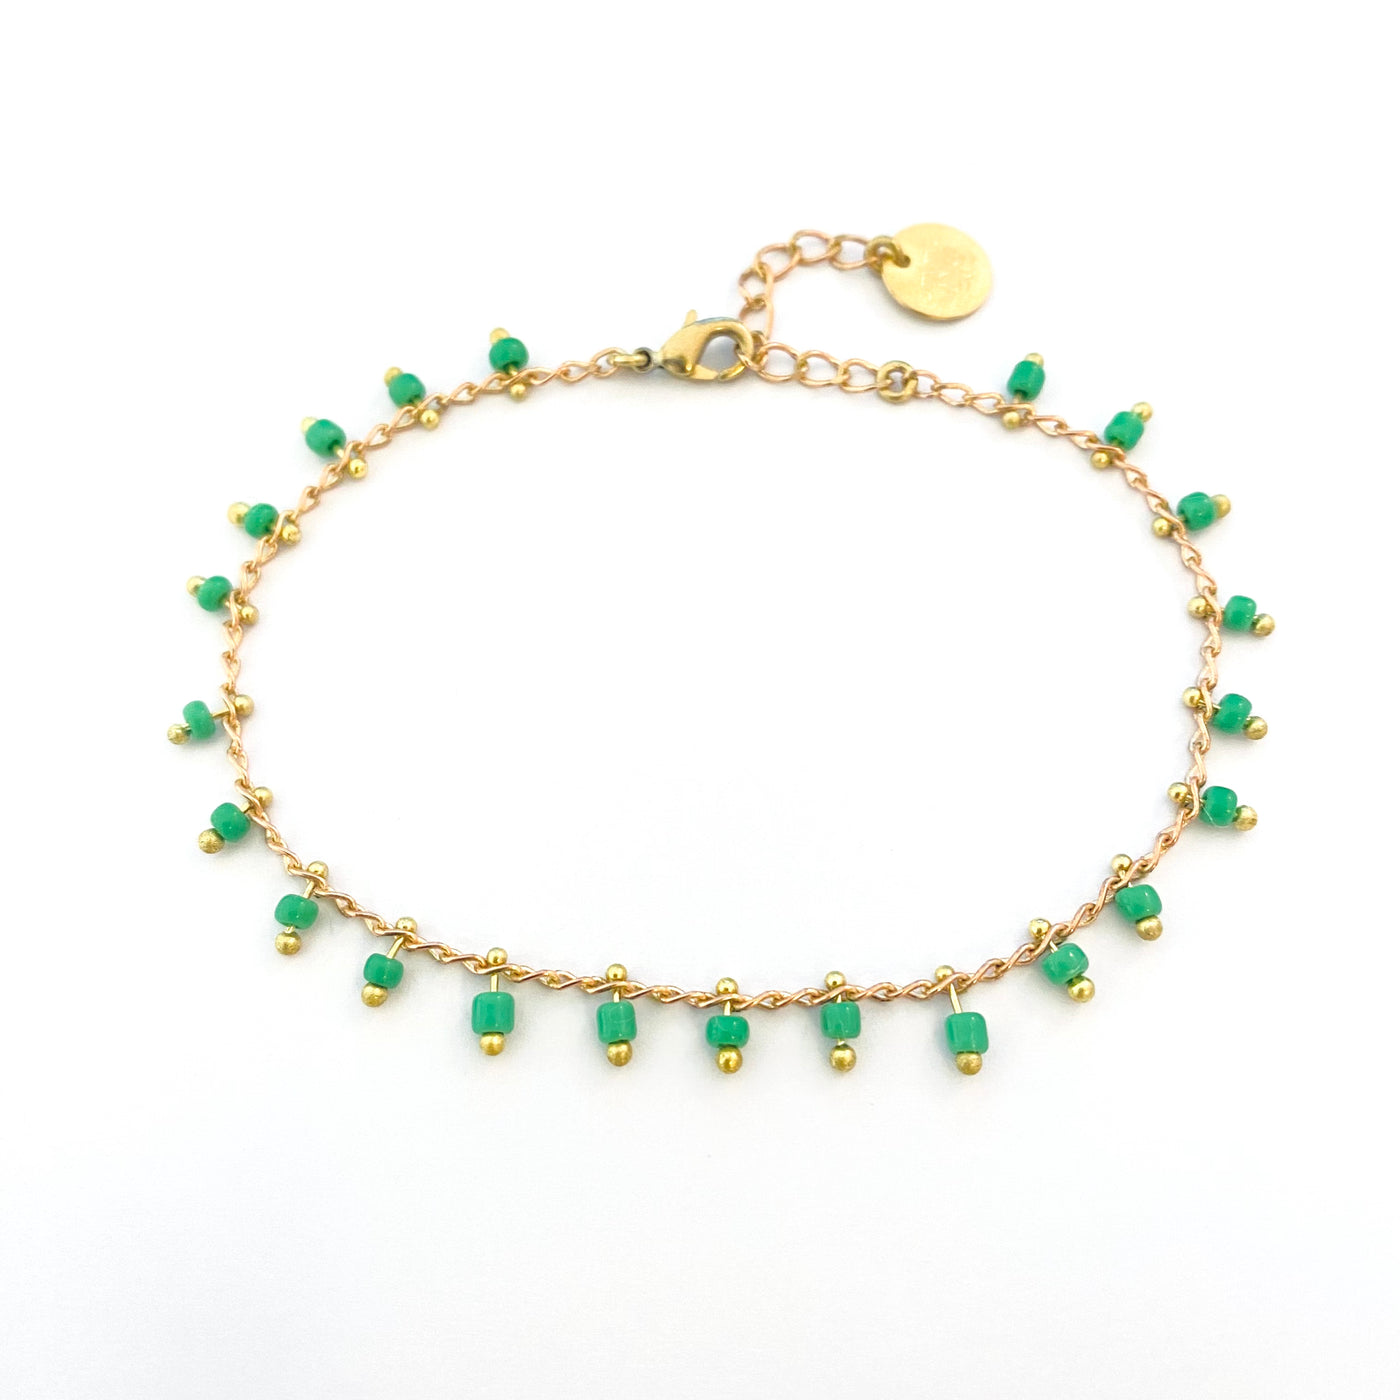 NINO - Anise green brass bracelet